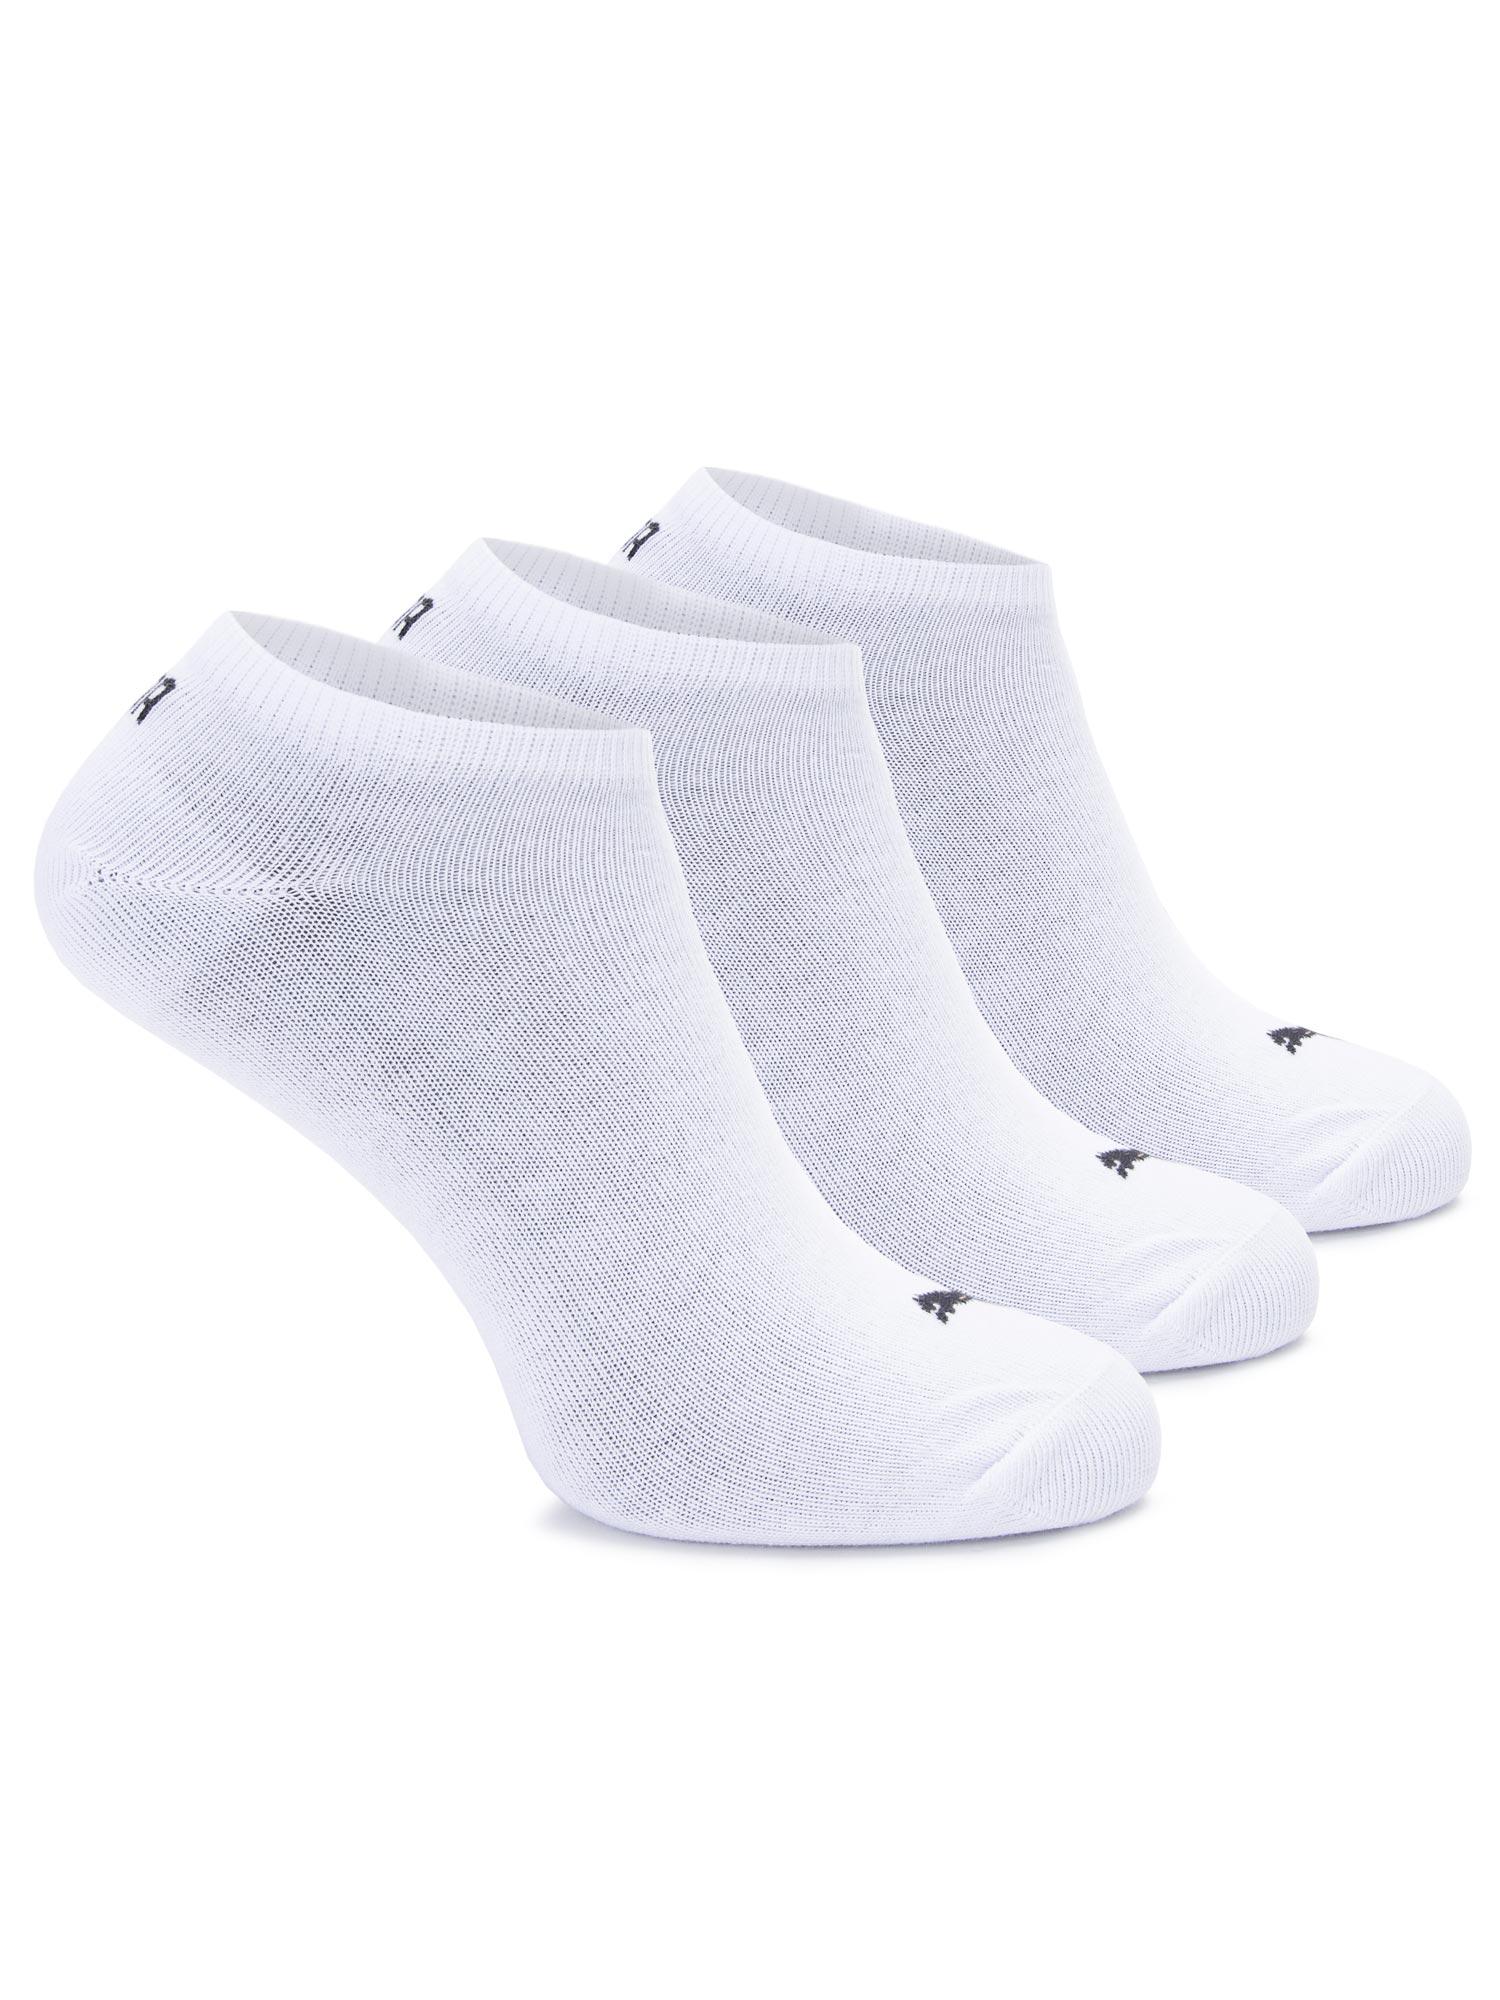 PUMA UNISEX SNEAKER PLA Čarape muške 3/1 bele